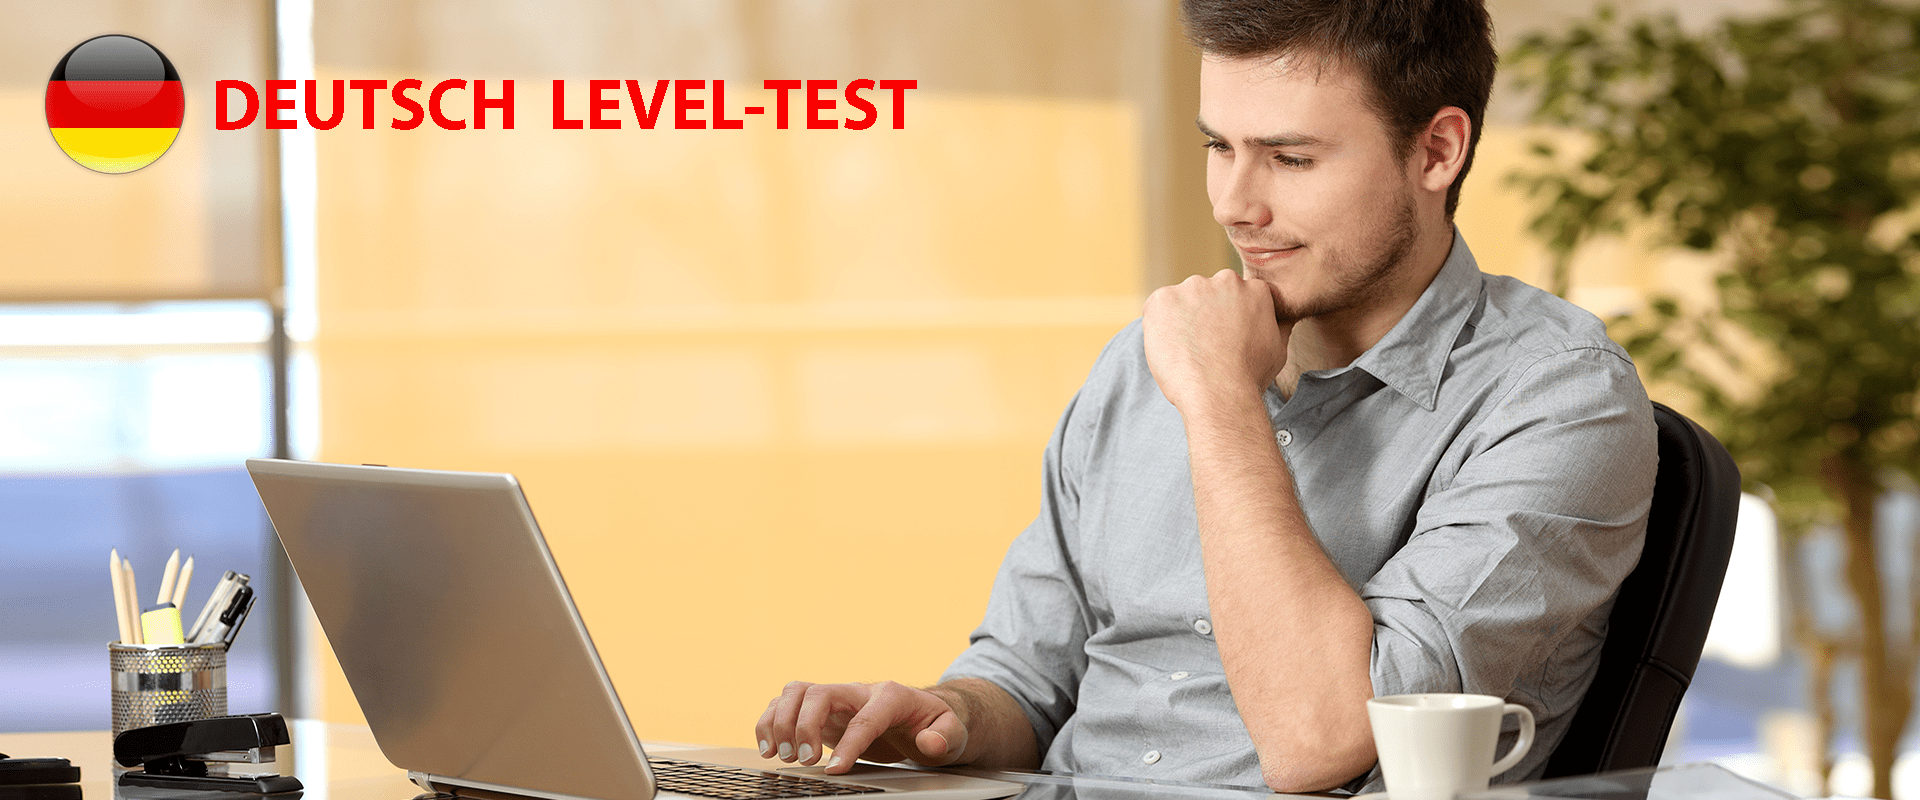 Deu_assessment_test